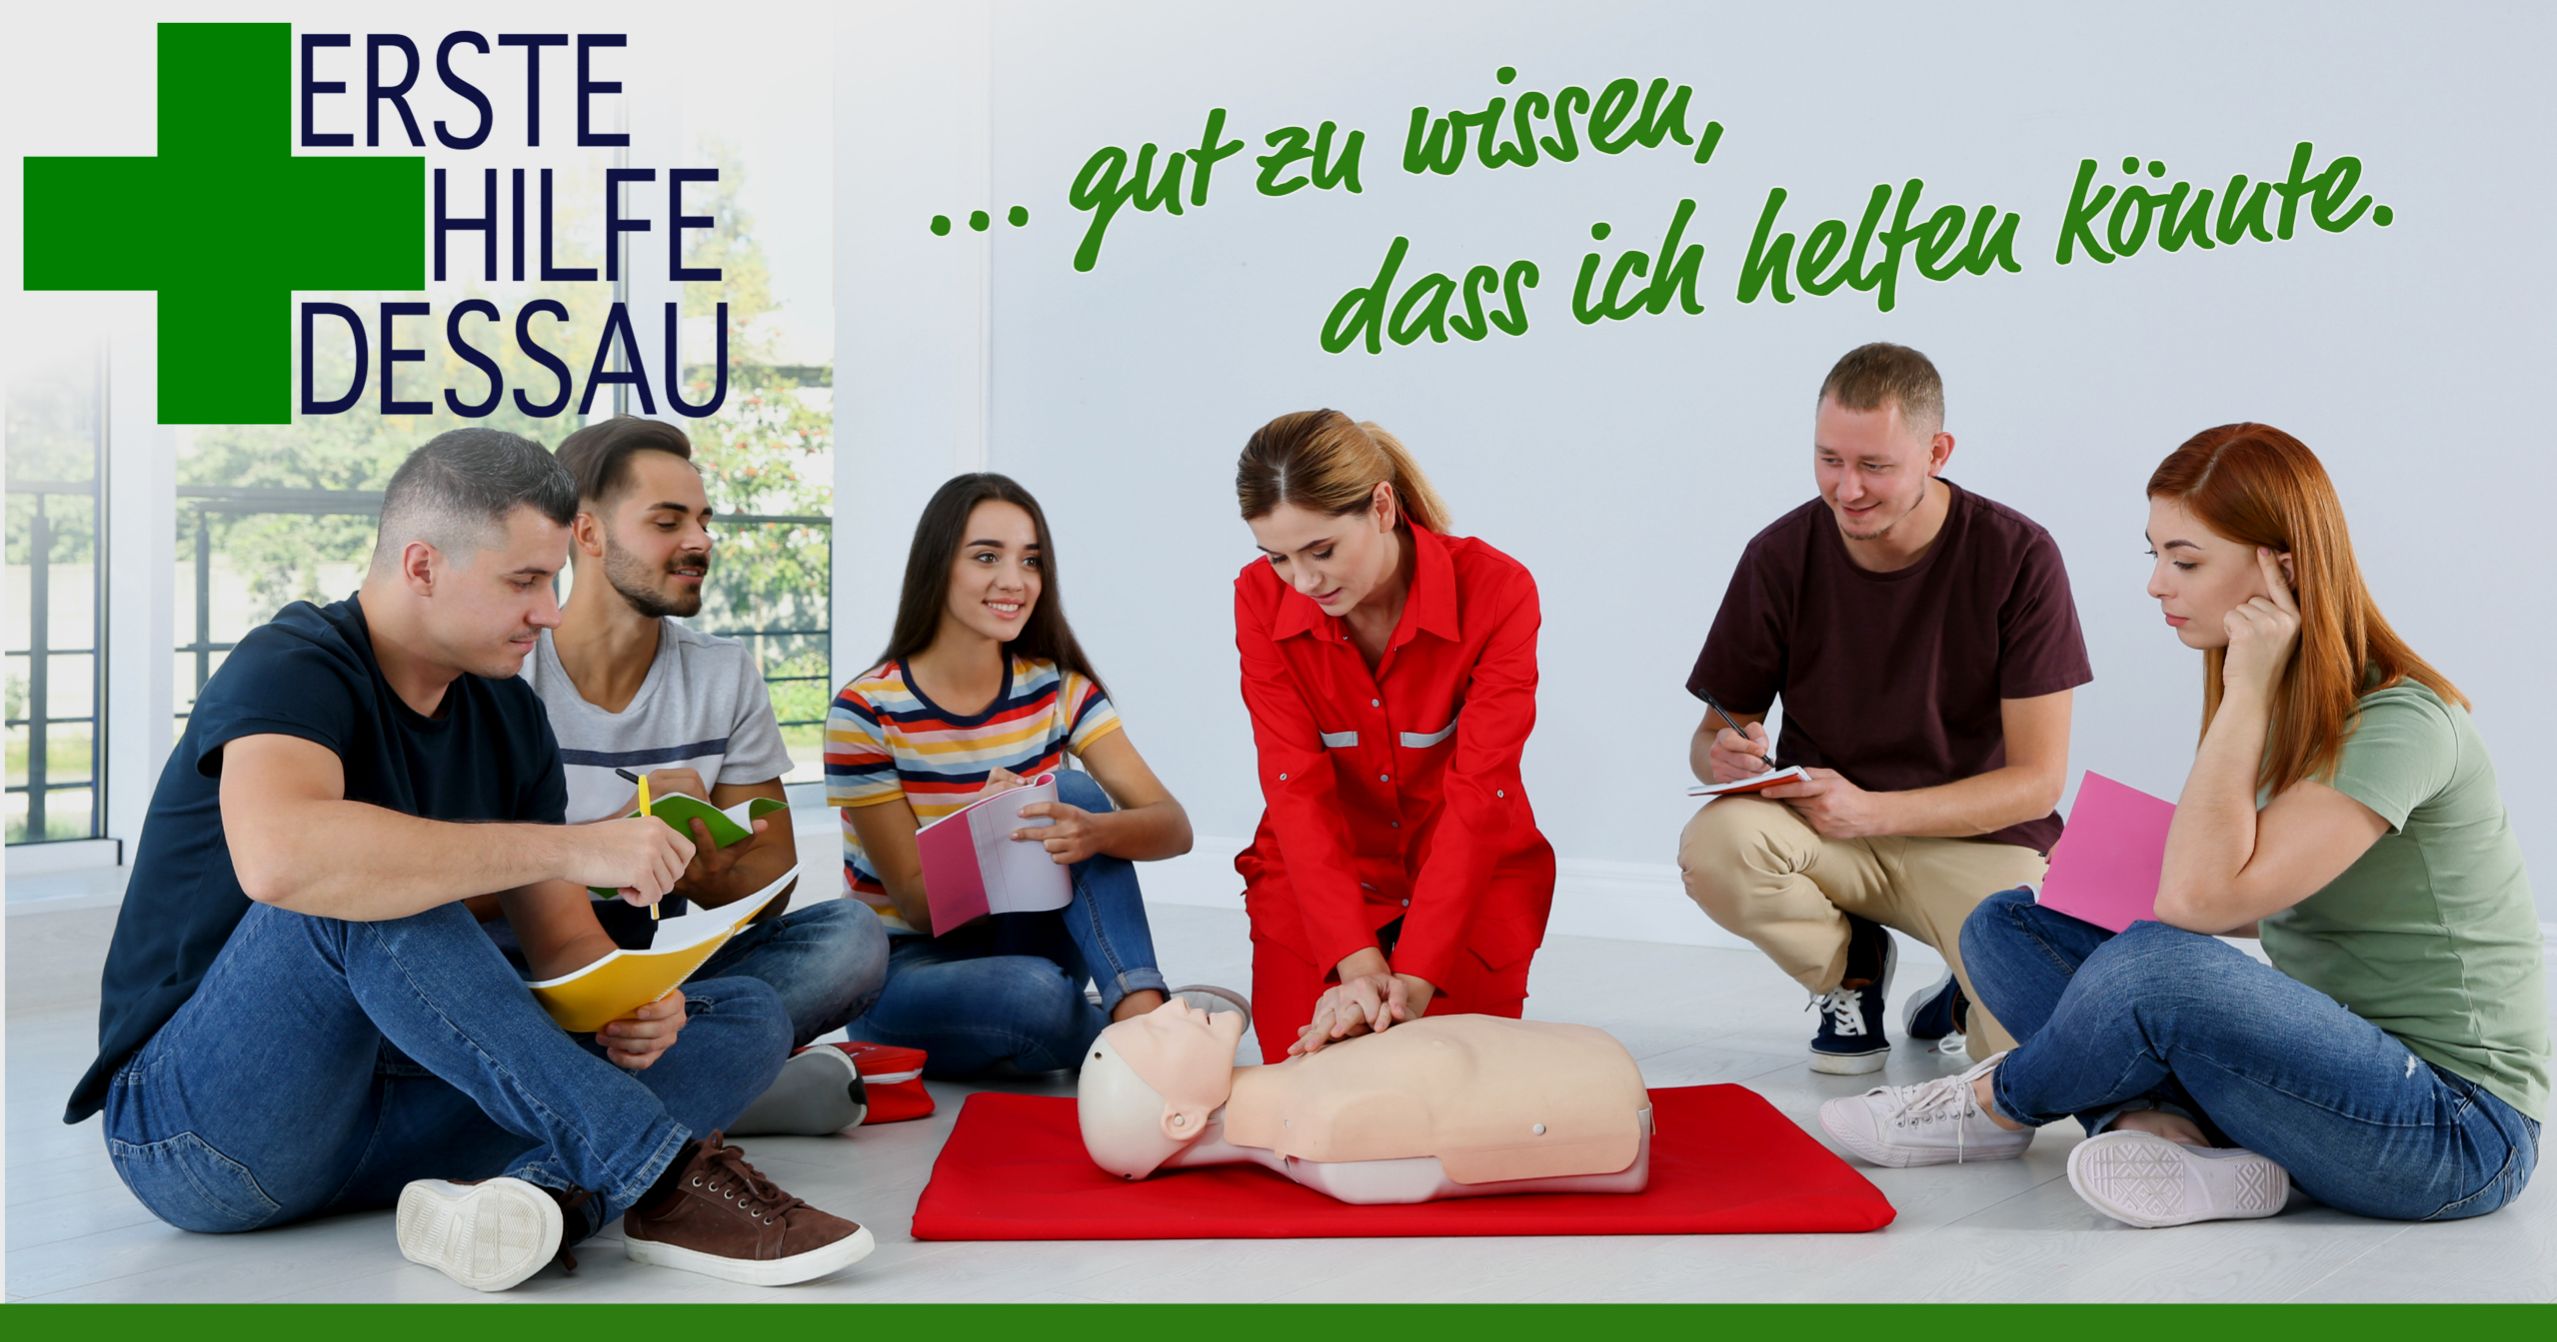 Erste Hilfe Dessau | Kutsche & Kutsche